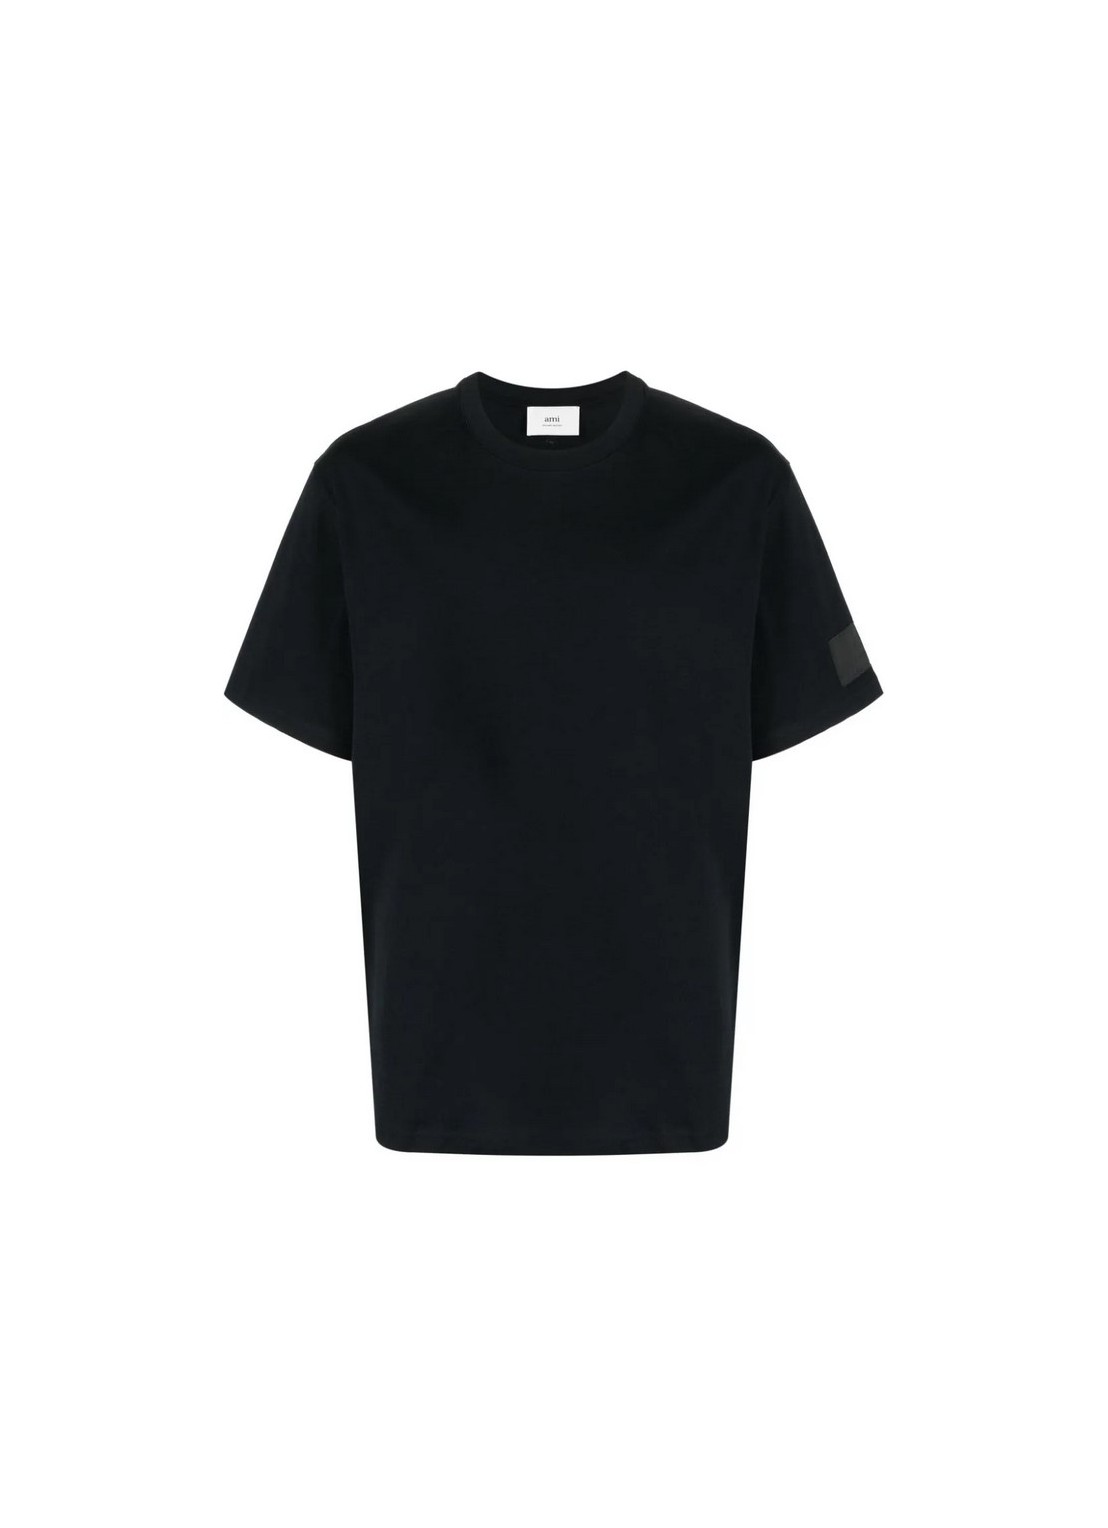 Camiseta ami t-shirt man fade out tshirt uts017726 001 talla negro
 